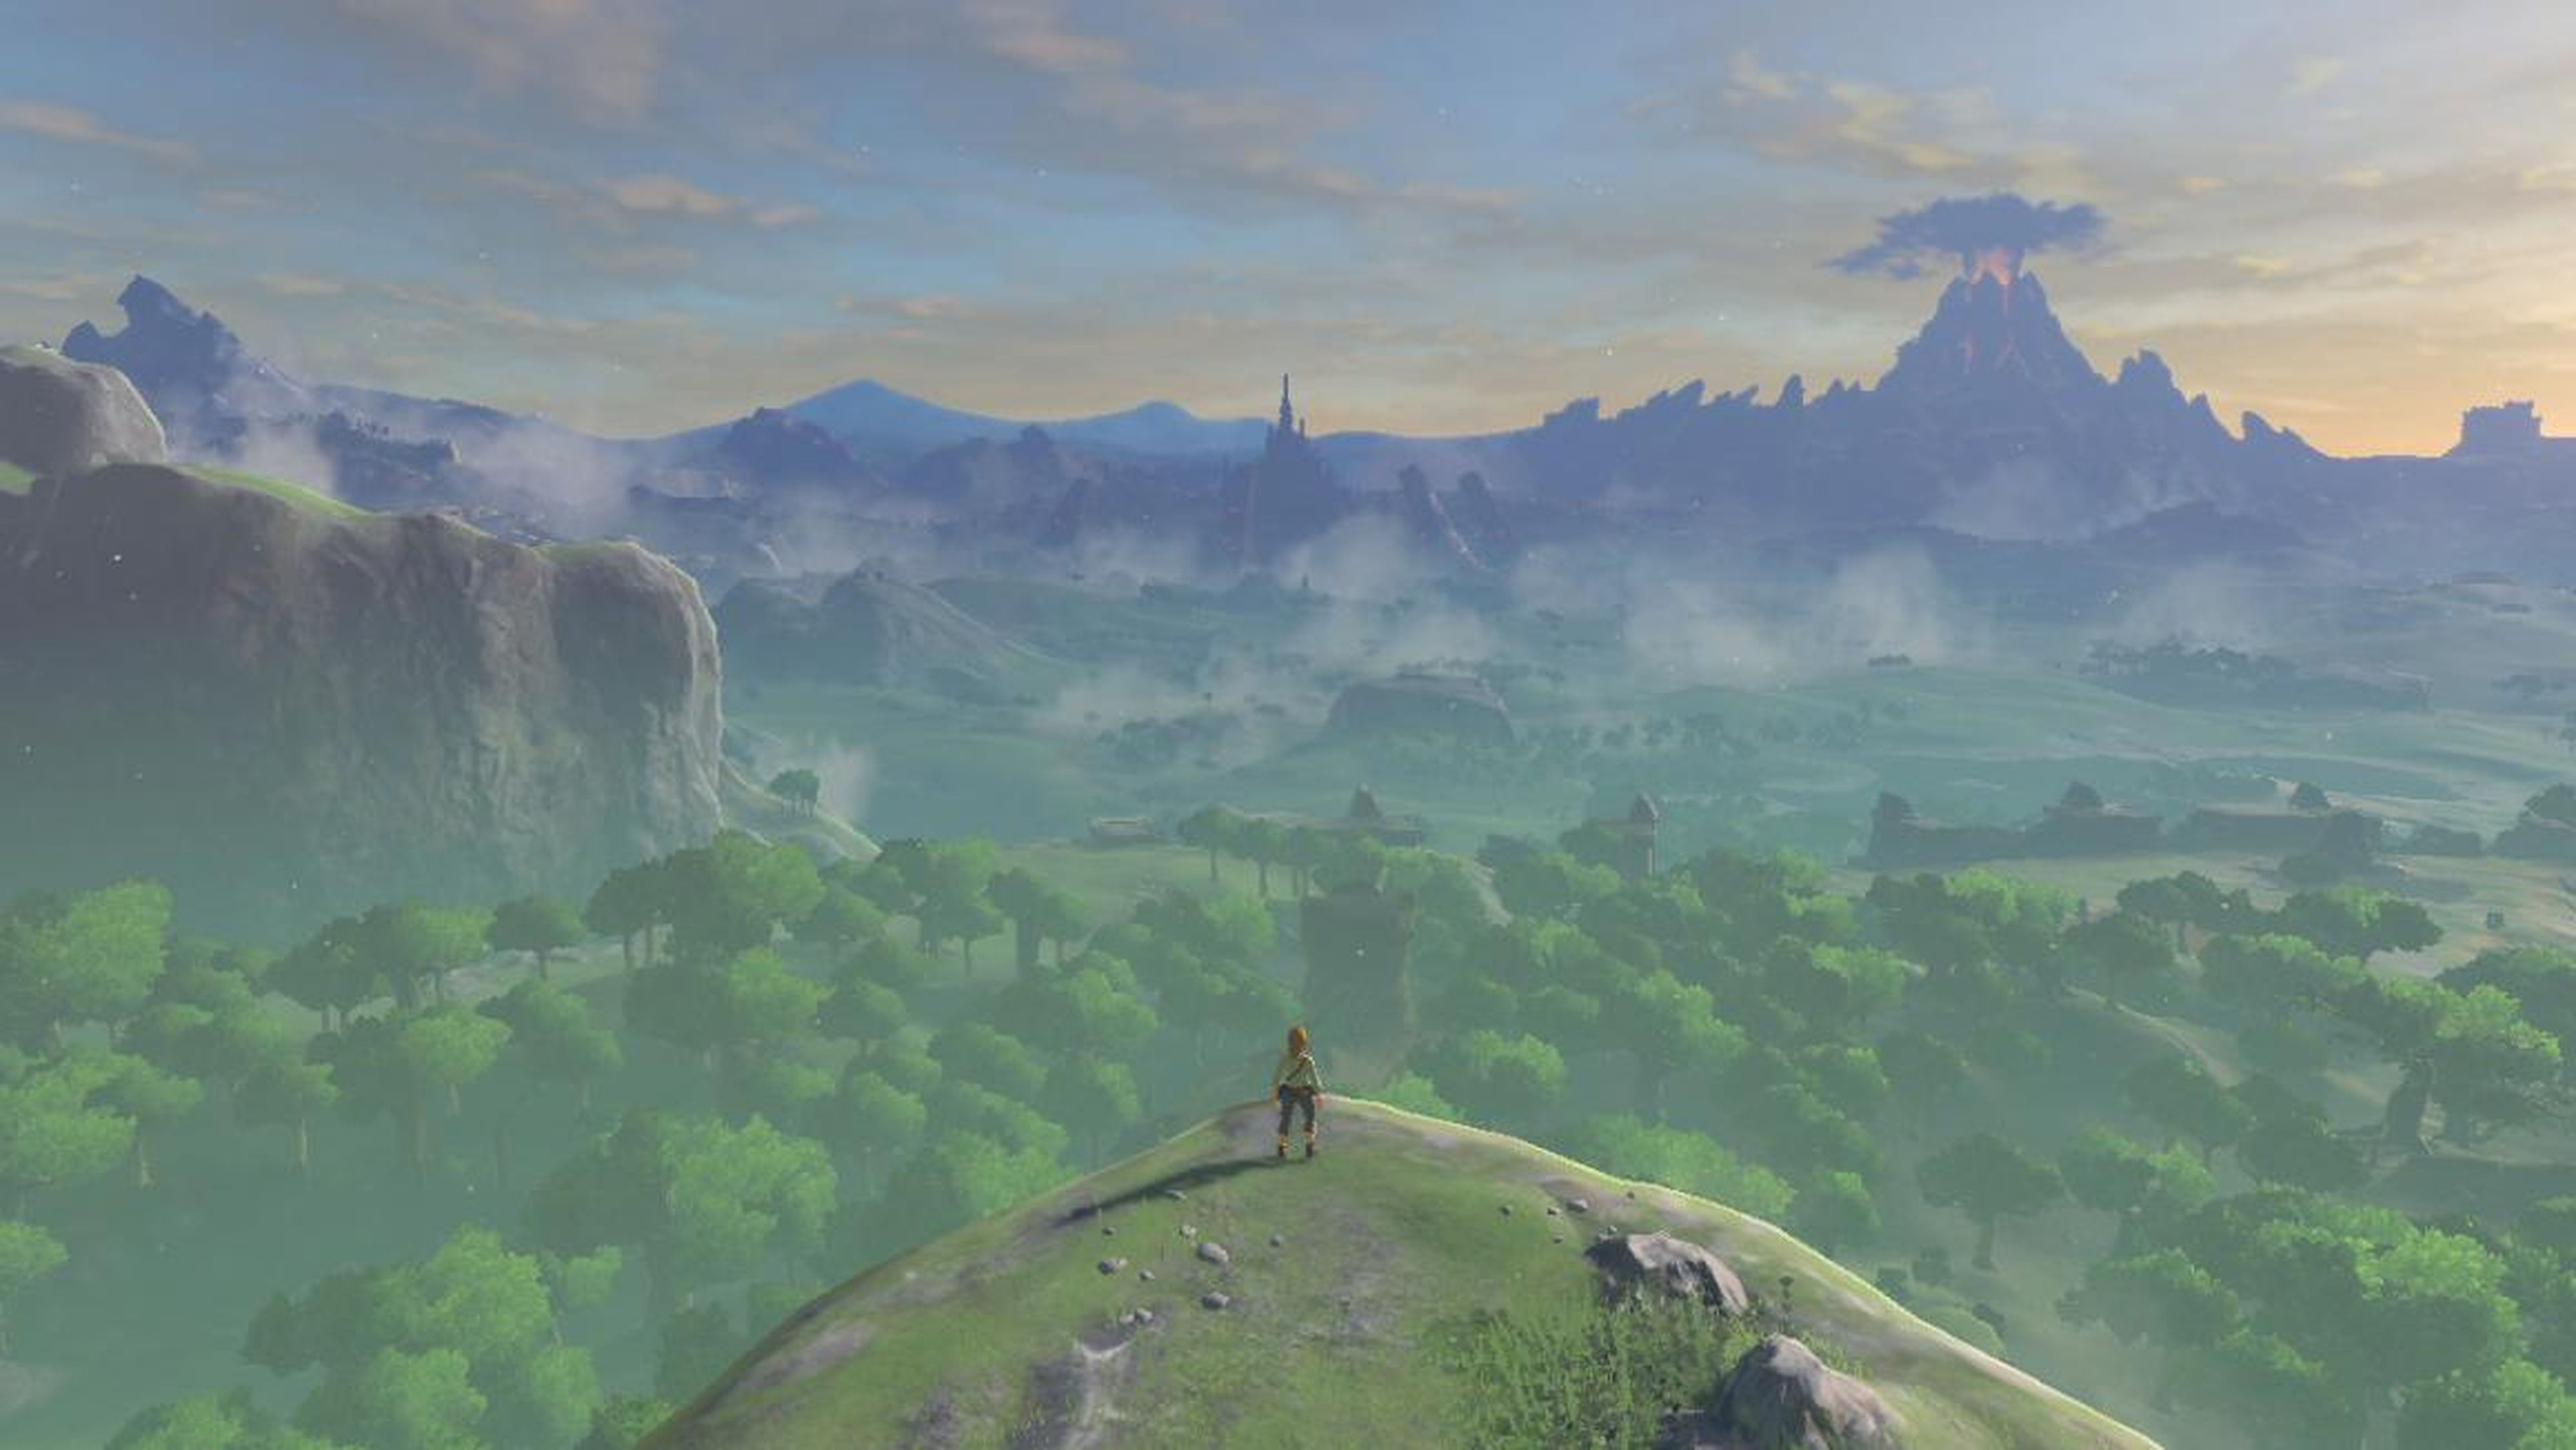 7. "The Legend of Zelda: Breath of the Wild"